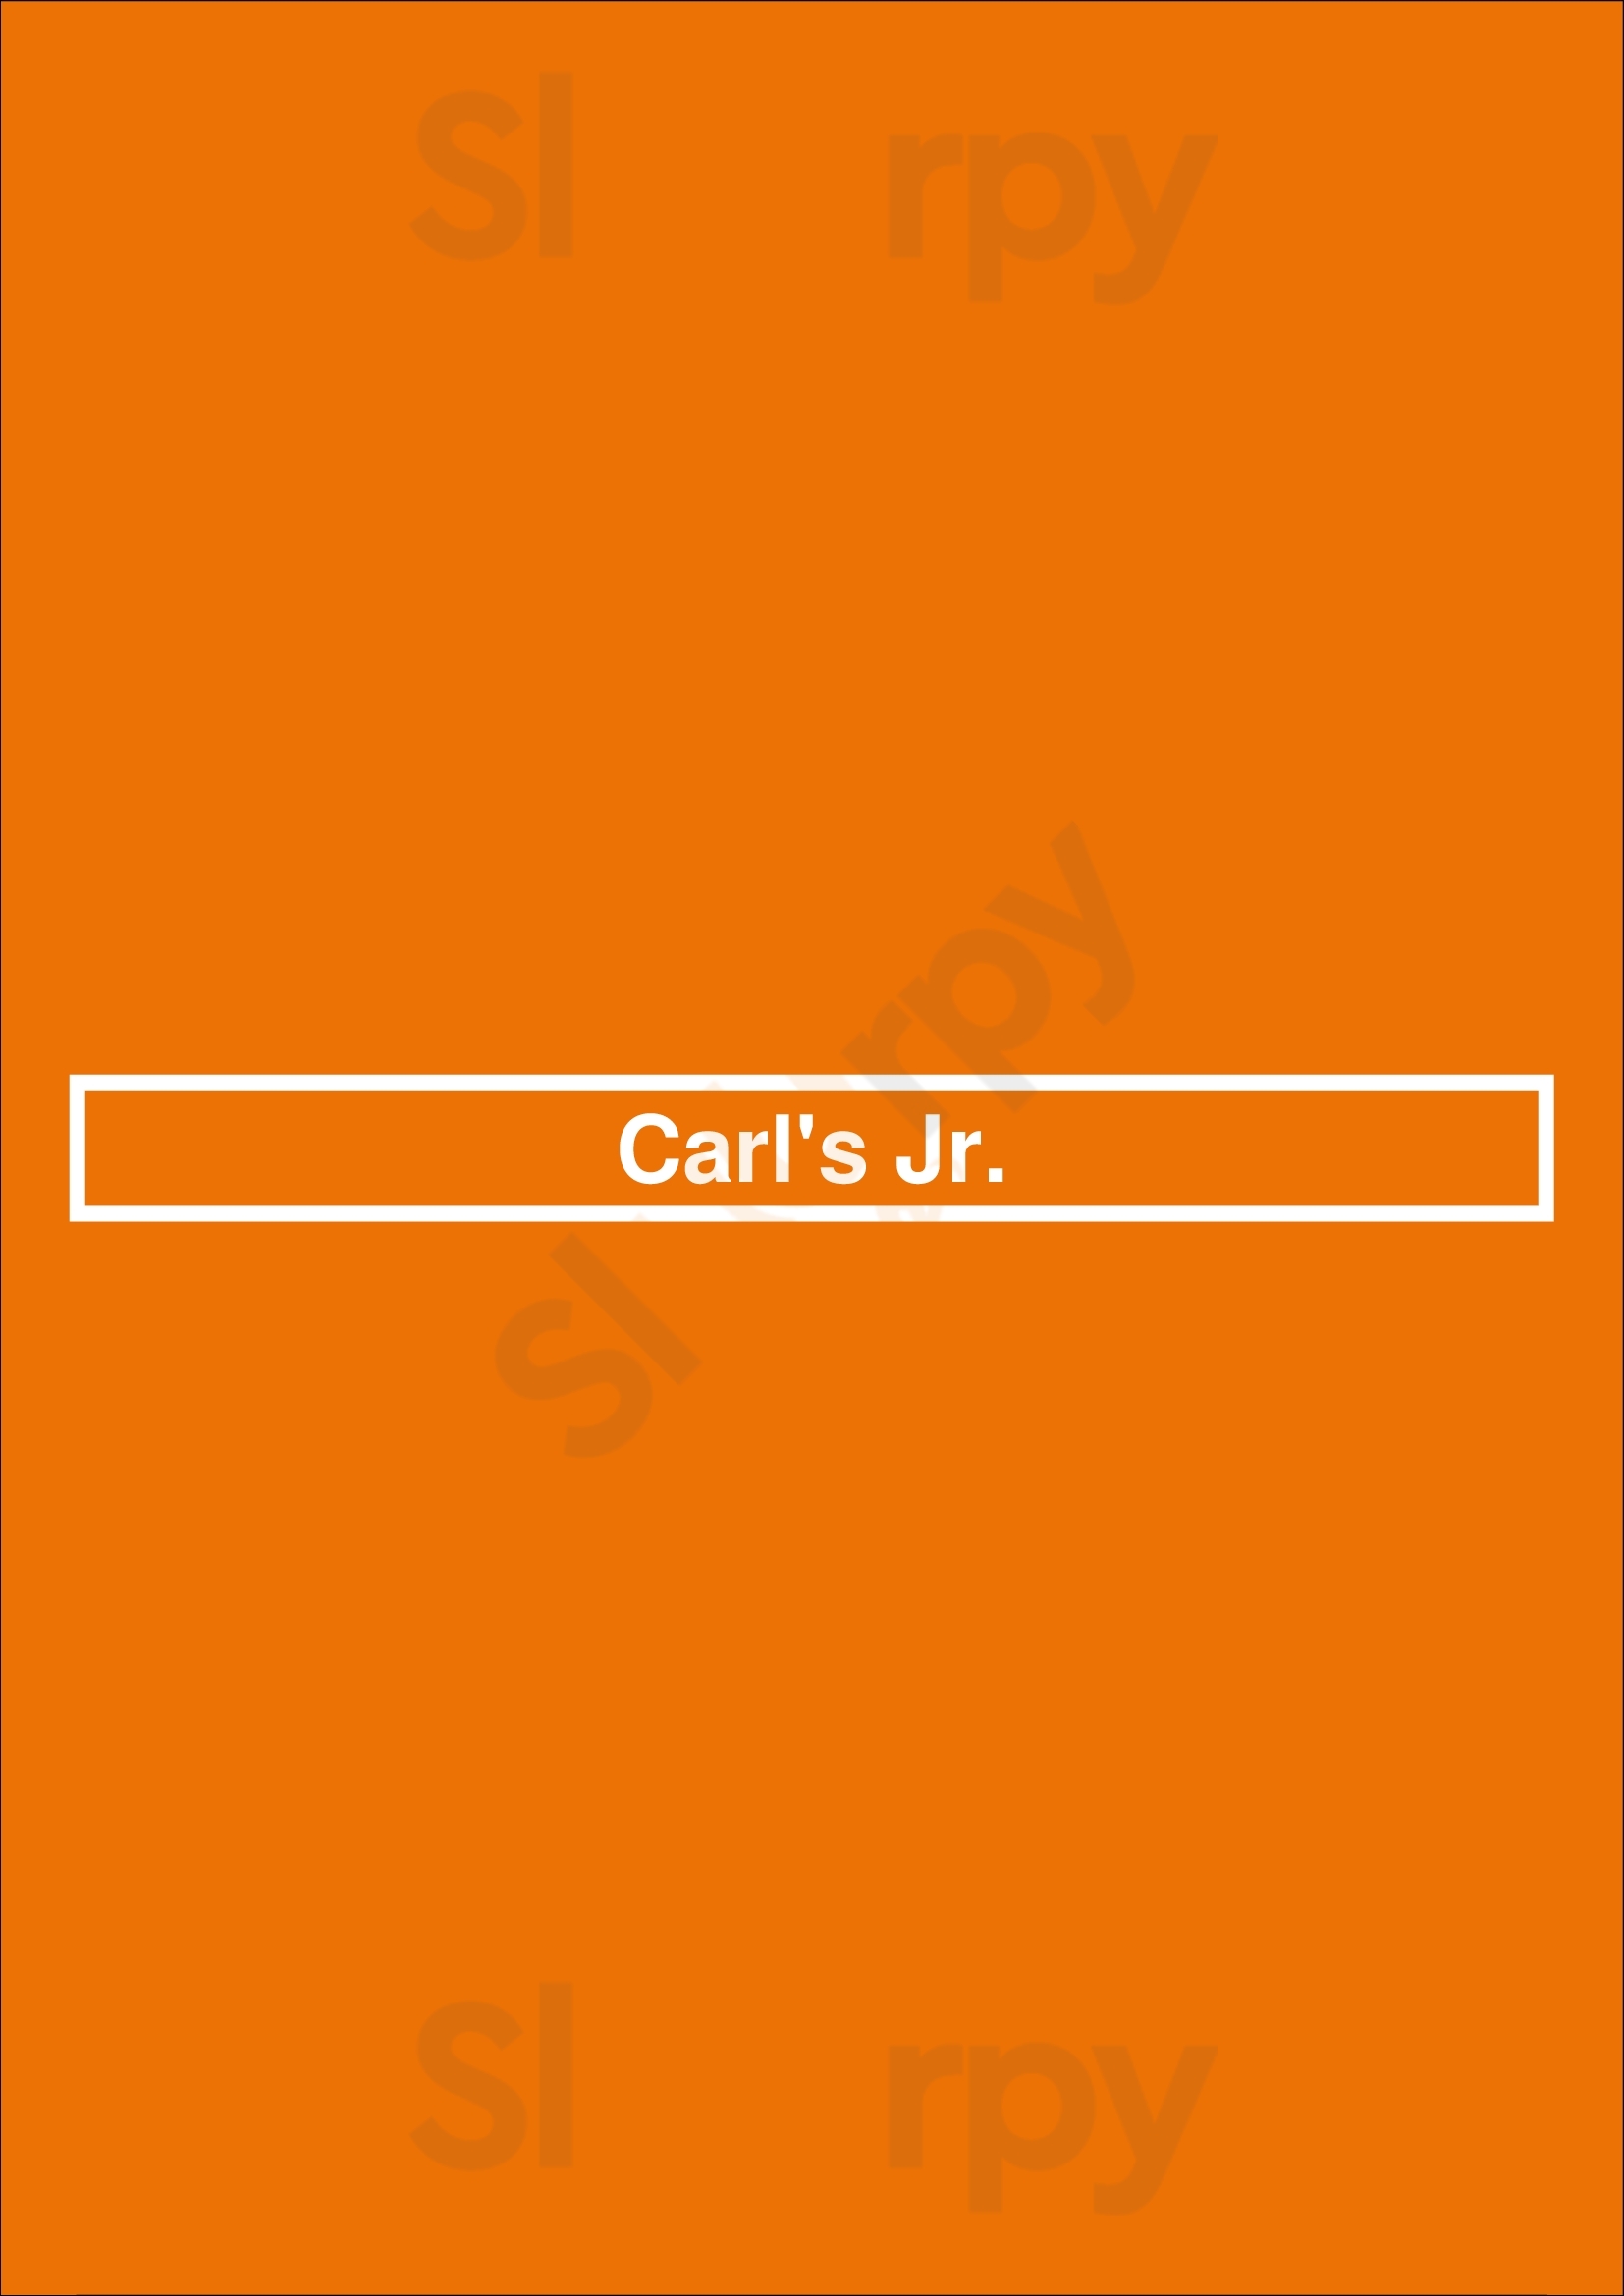 Carl's Jr. Long Beach Menu - 1